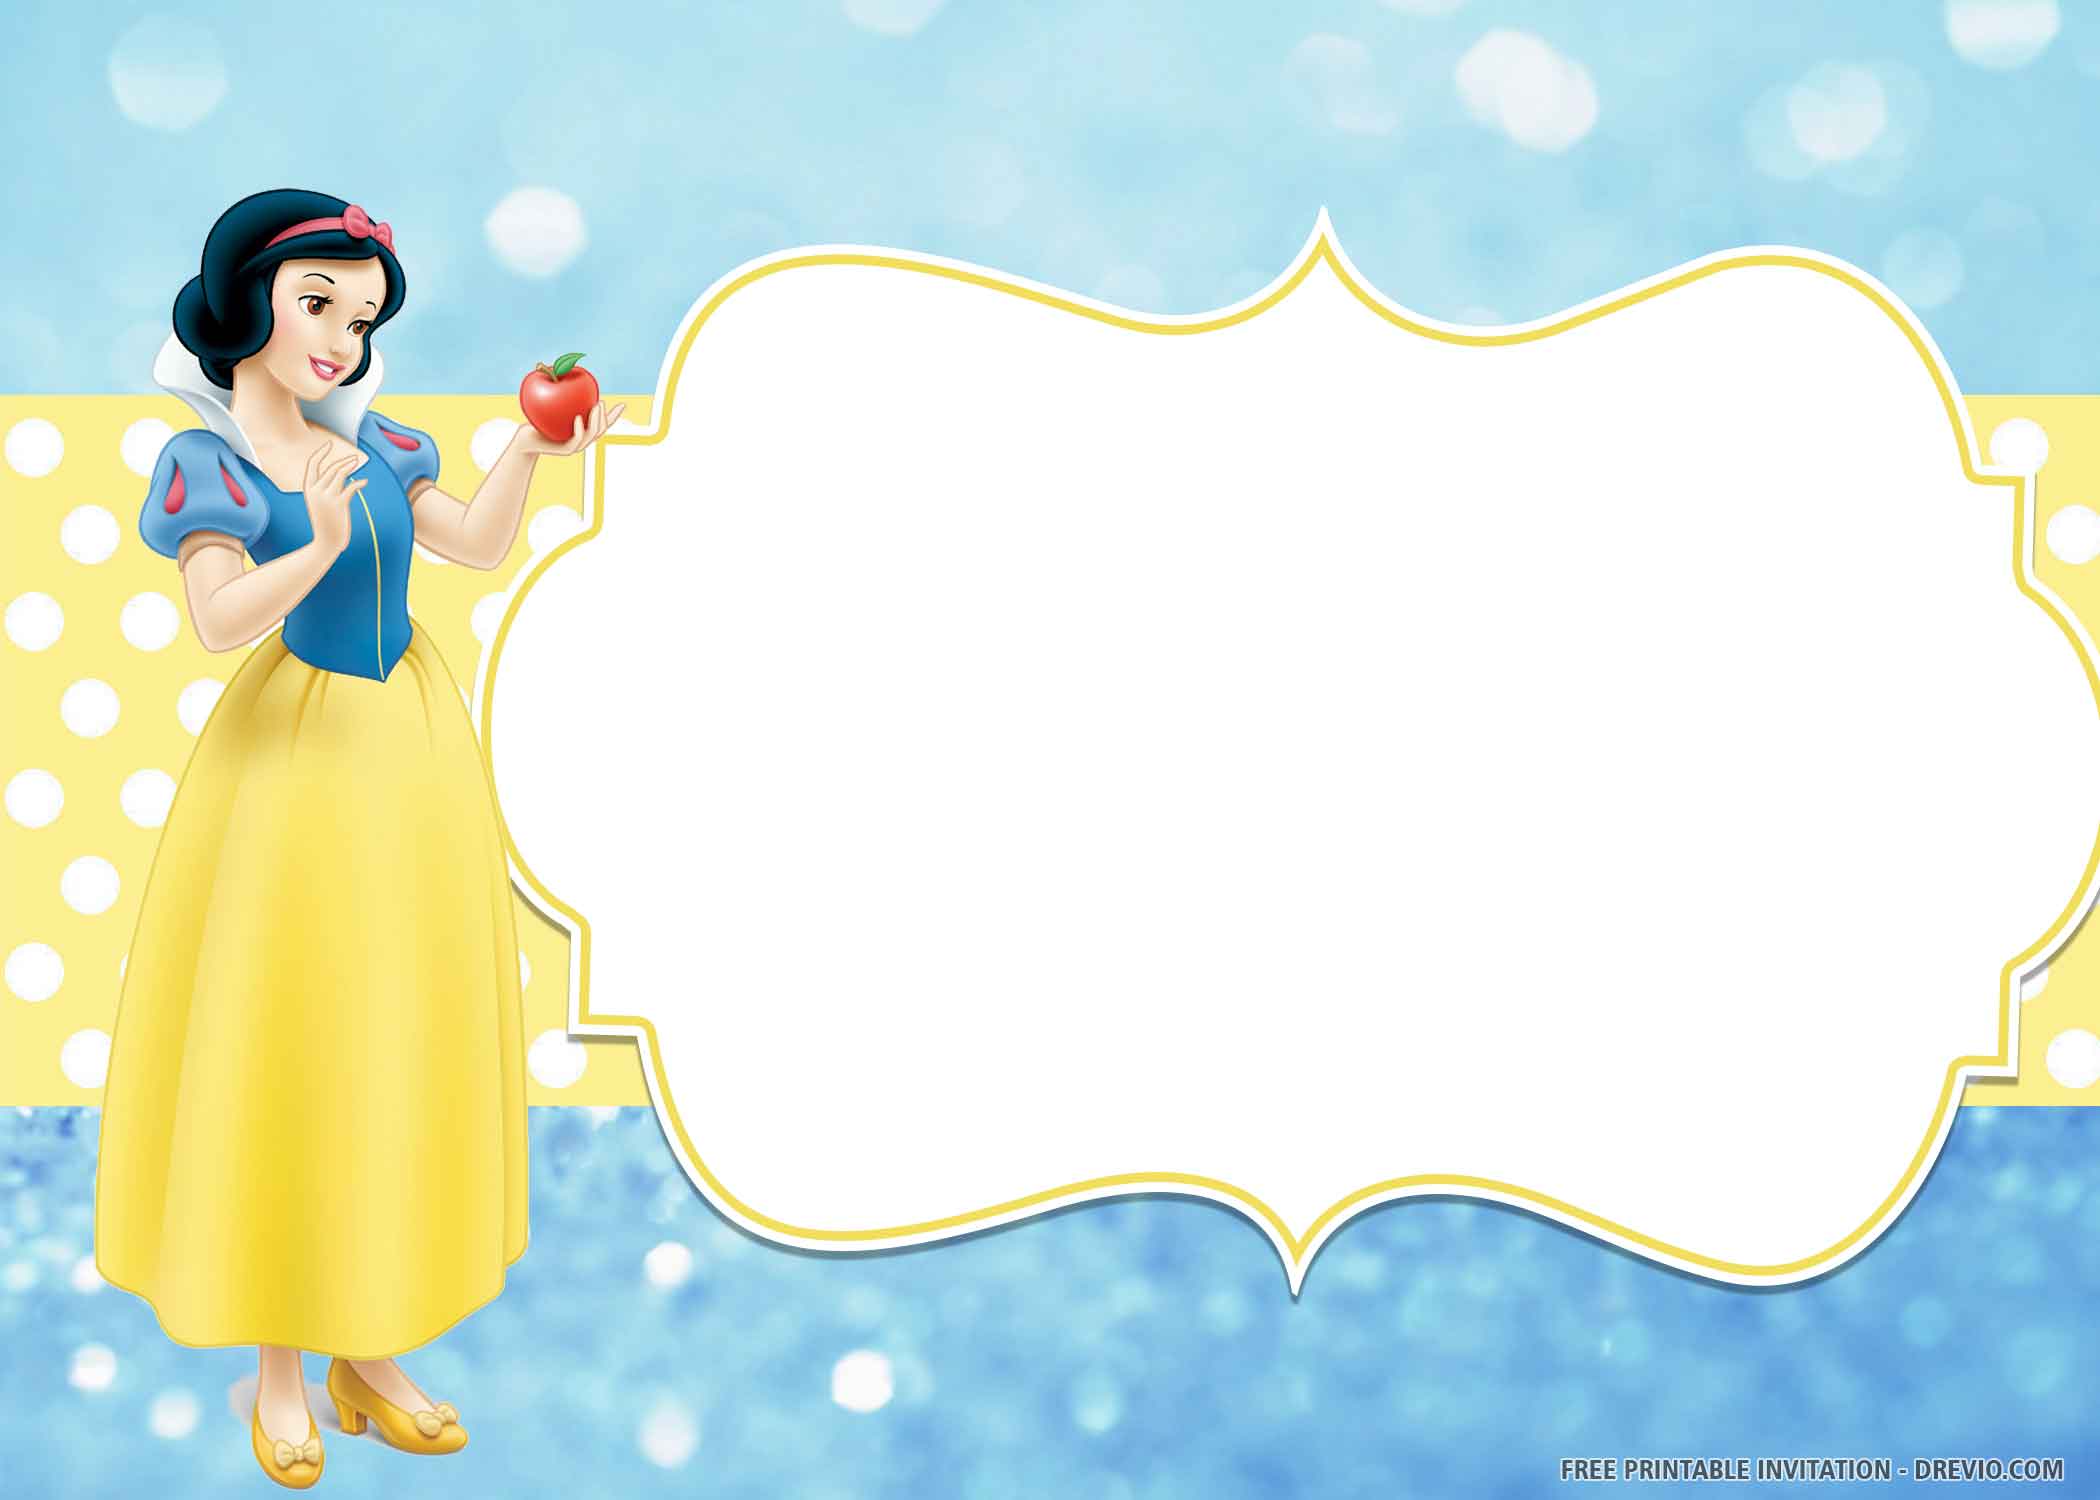 Hãy cùng xem mẫu thiệp mời sinh nhật Snow White tuyệt đẹp này để chuẩn bị cho bữa tiệc sinh nhật sắp tới của bạn! Sự kết hợp giữa Snow White và tiệc sinh nhật sẽ làm cho ngày của bạn trở nên thật đặc biệt và ấn tượng.